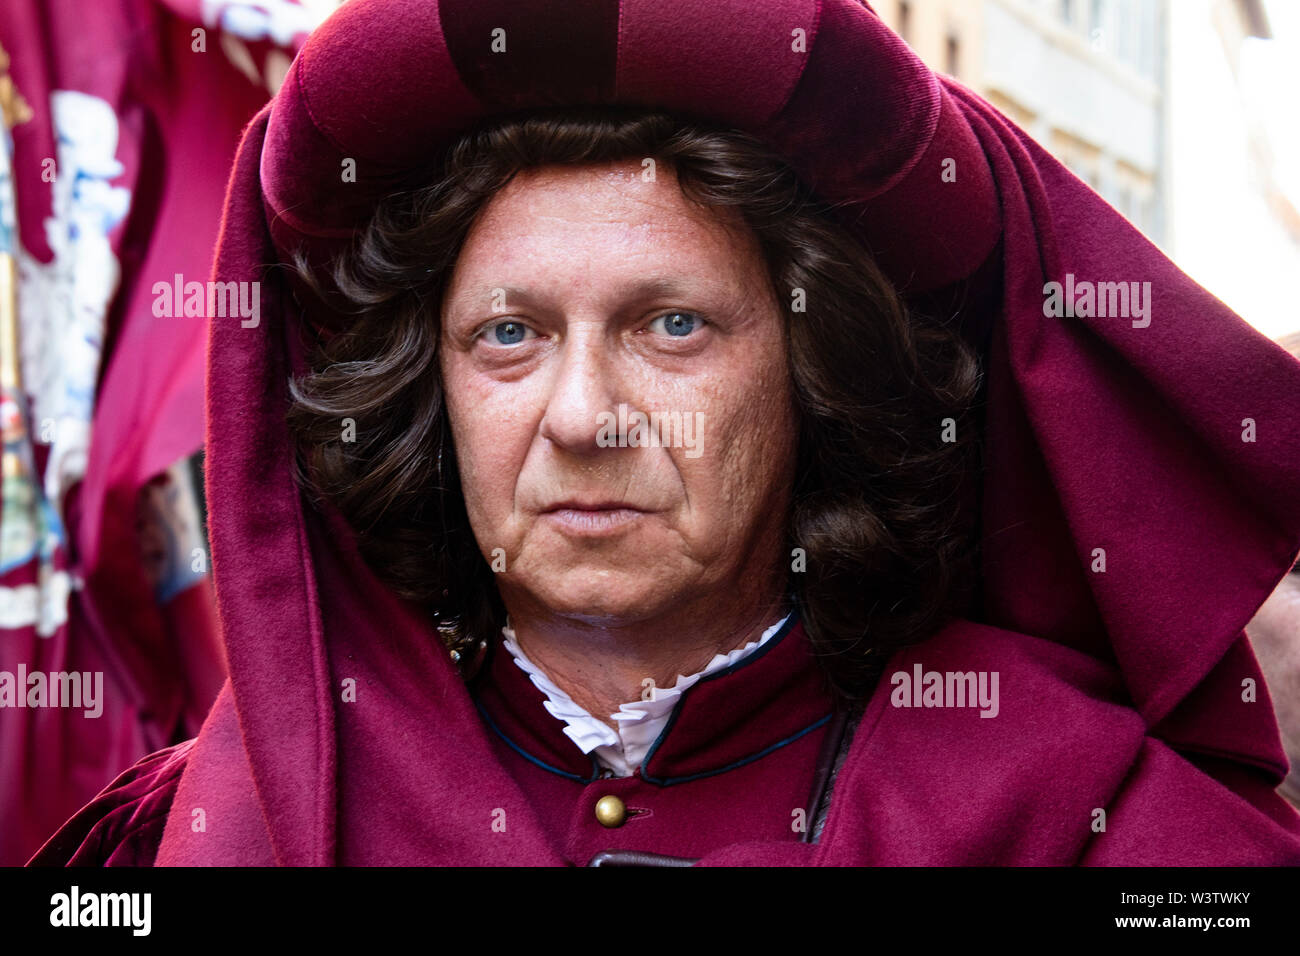 Un homme avec un visage intéressant et presque comique participe à l'événement Palio de Sienne, Italie Banque D'Images